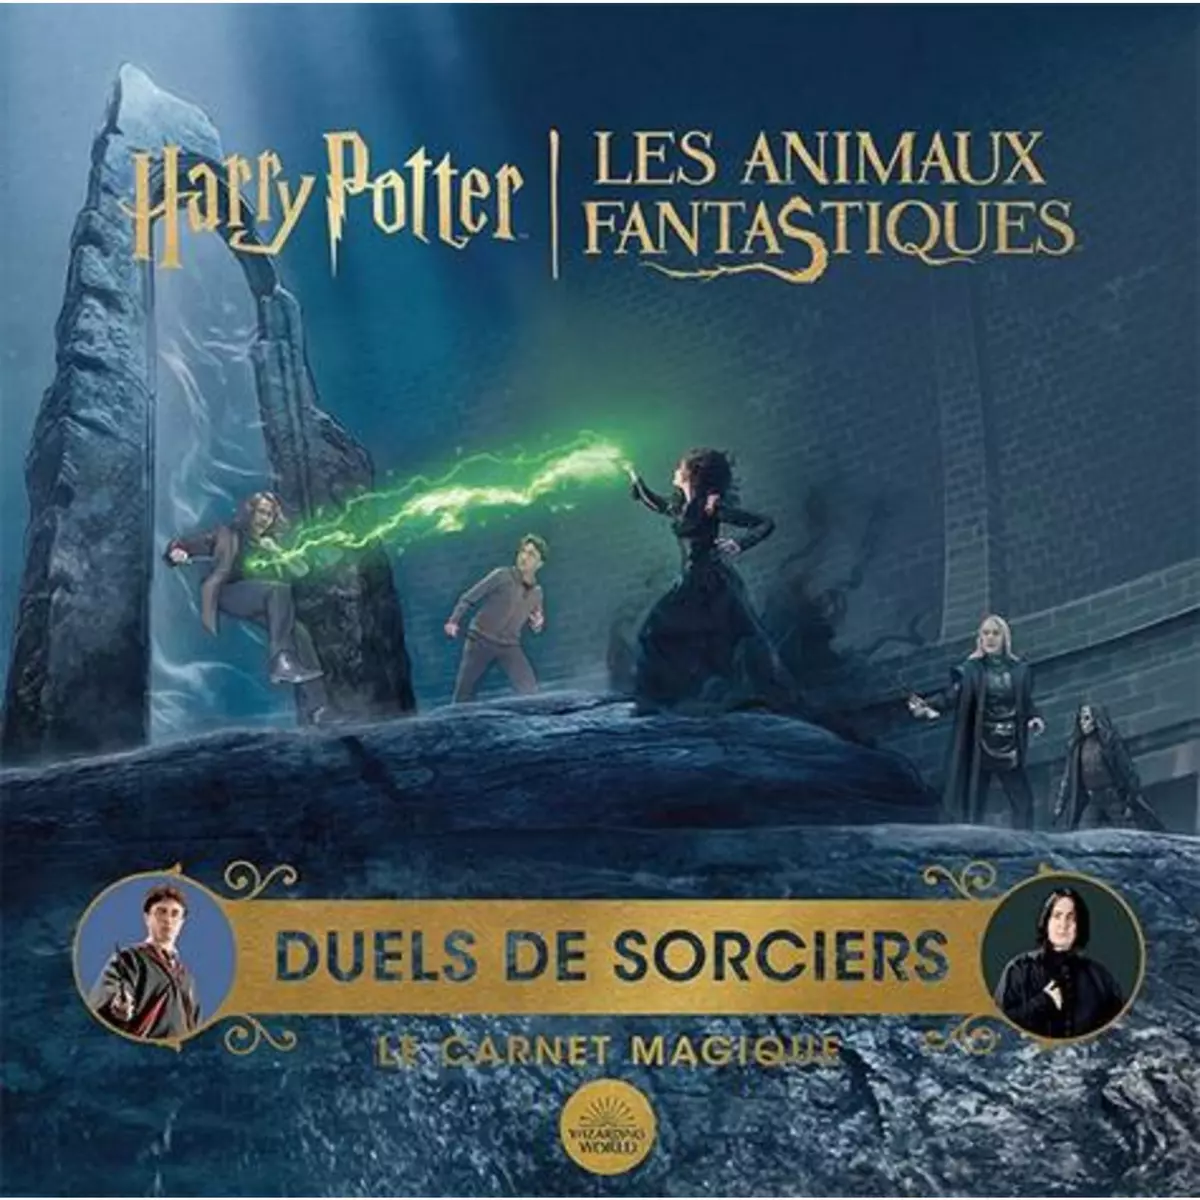  DUELS DE SORCIERS. LE CARNET MAGIQUE. D'APRES LES FILMS HARRY POTTER/LES ANIMAUX FANTASTIQUES, Wizarding World